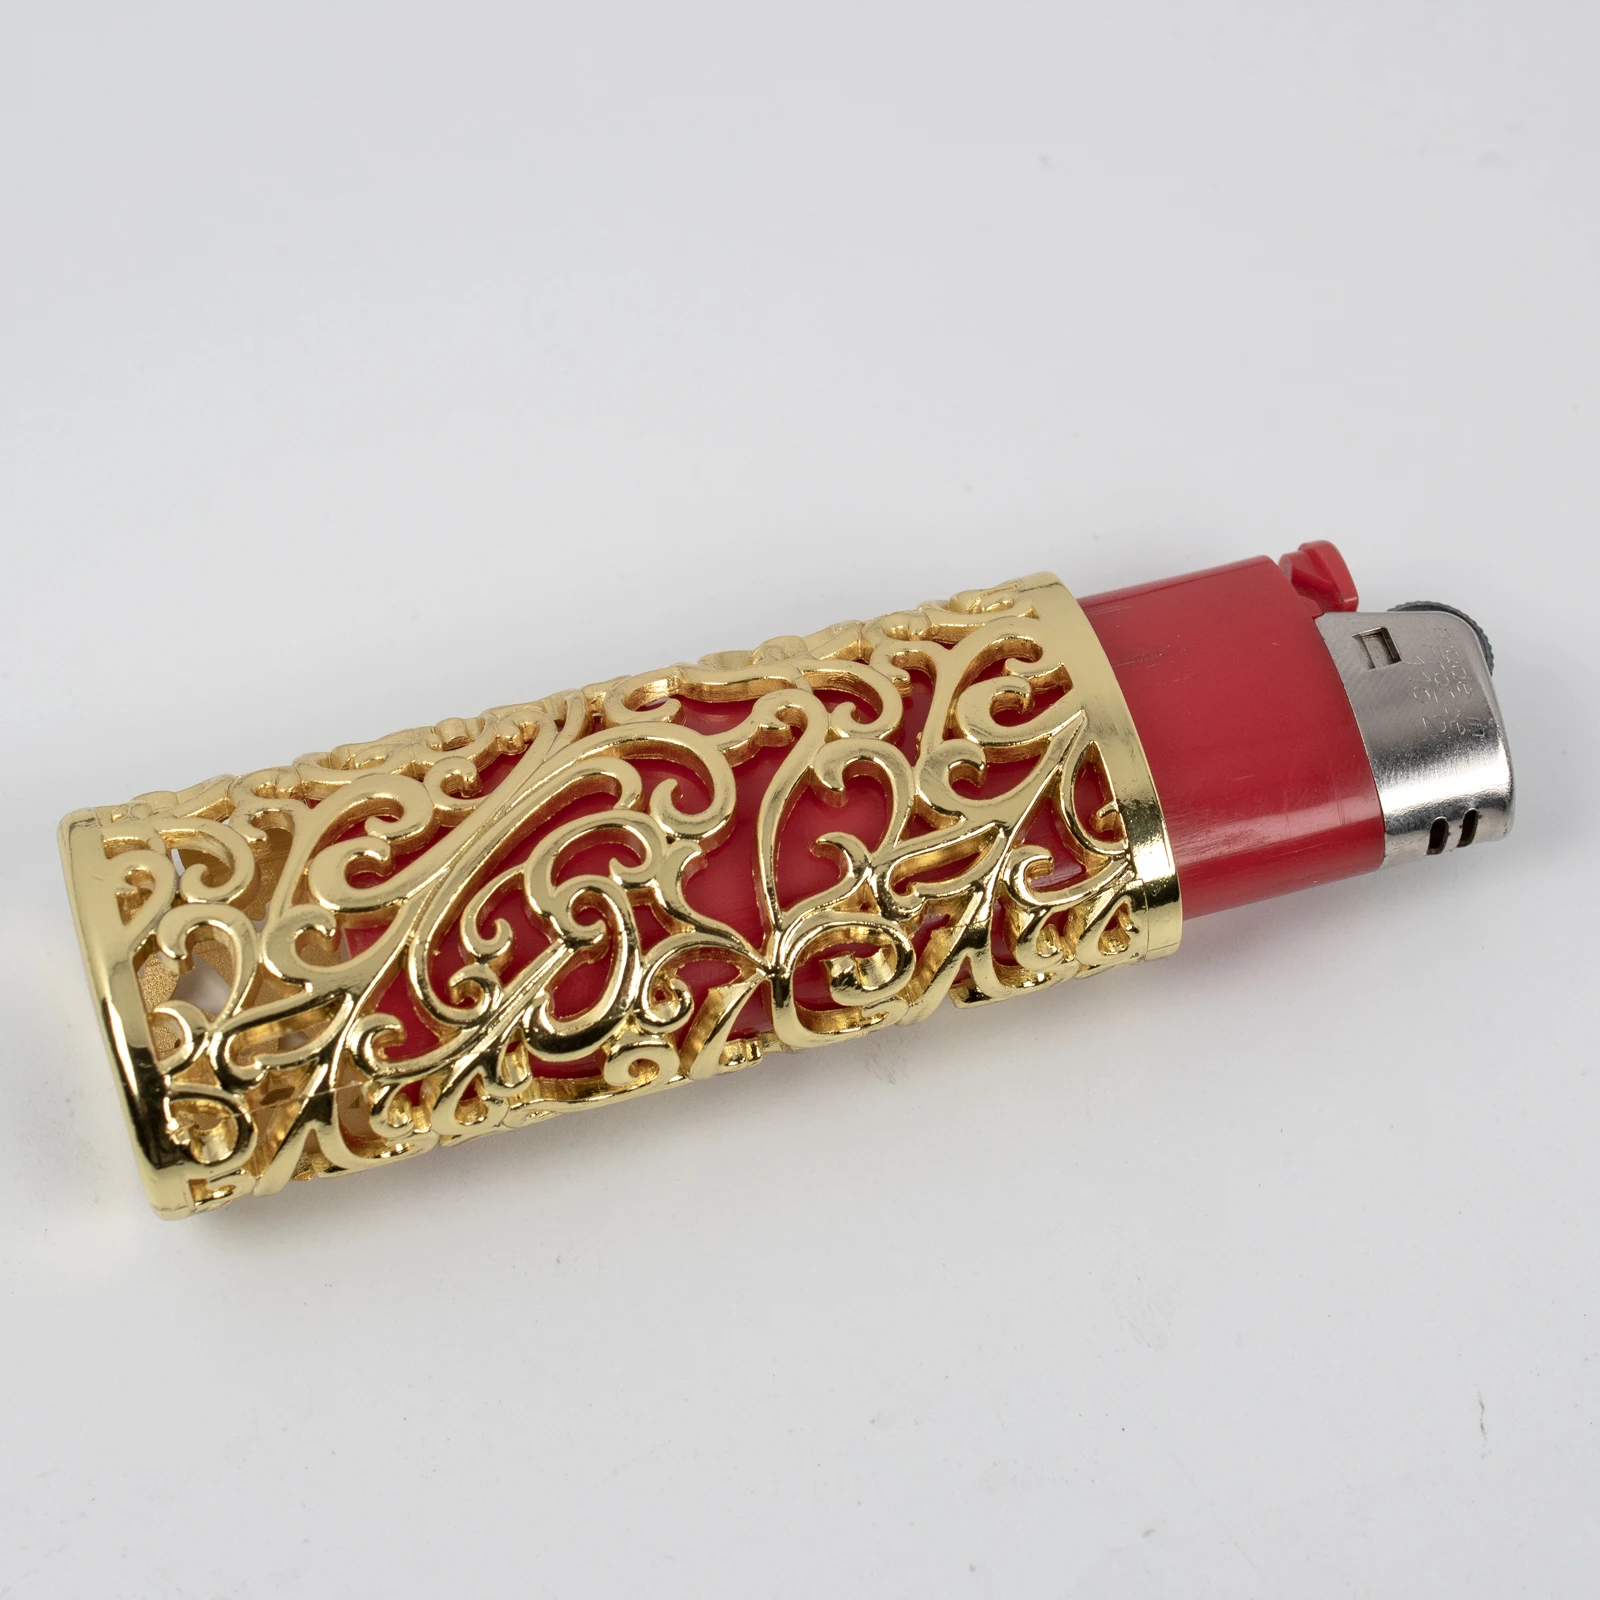 Vintage Metal Lighter Case Holder With Hollow Pattern Design, Gift